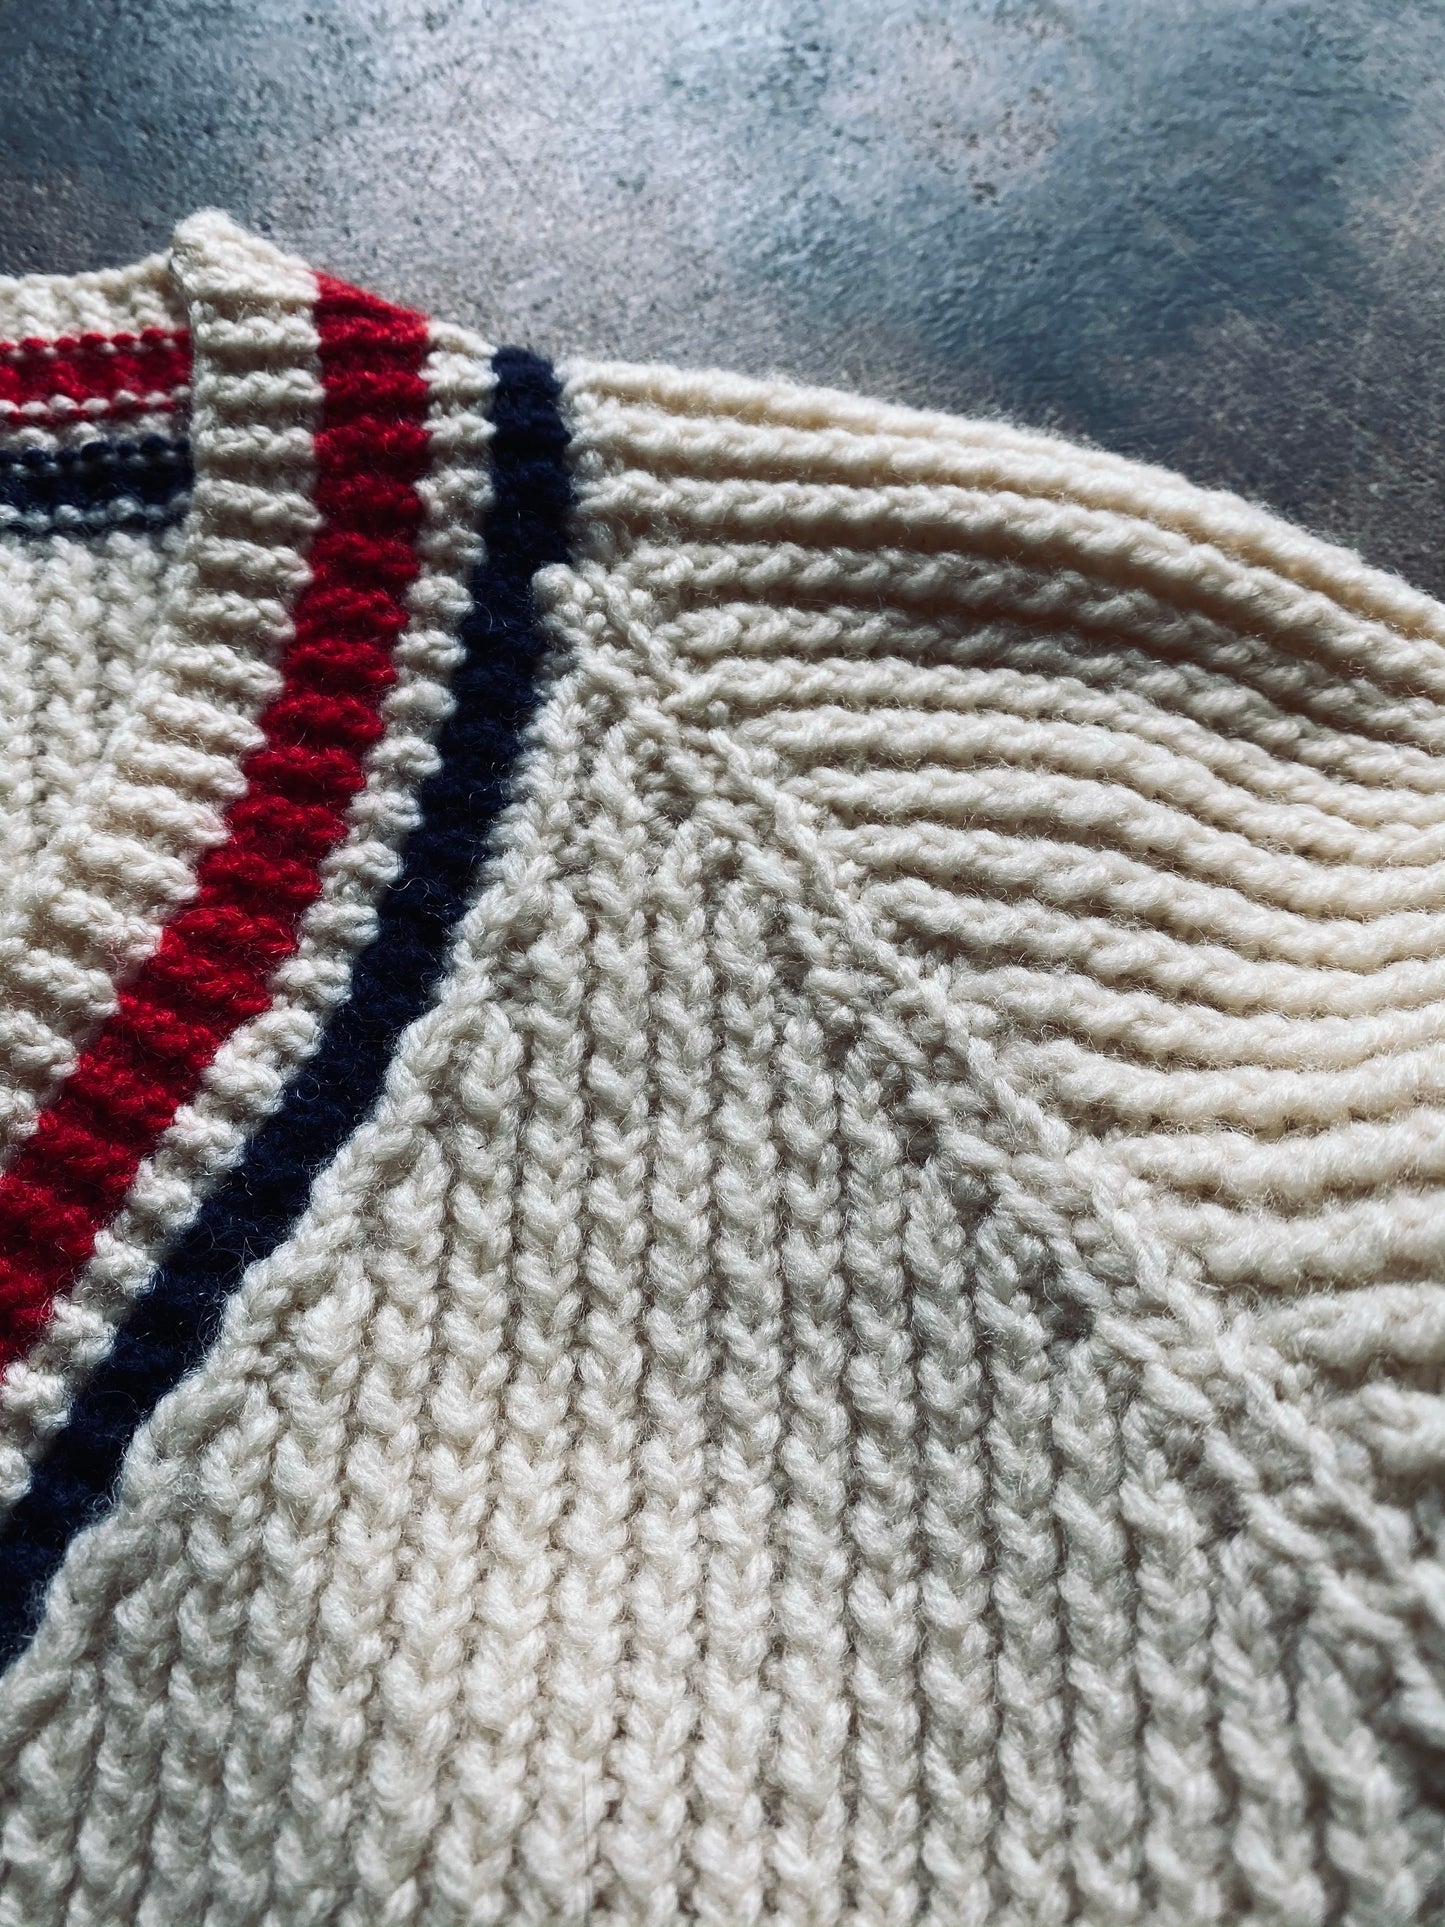 1960s V-Neck “U” Varsity Sweater